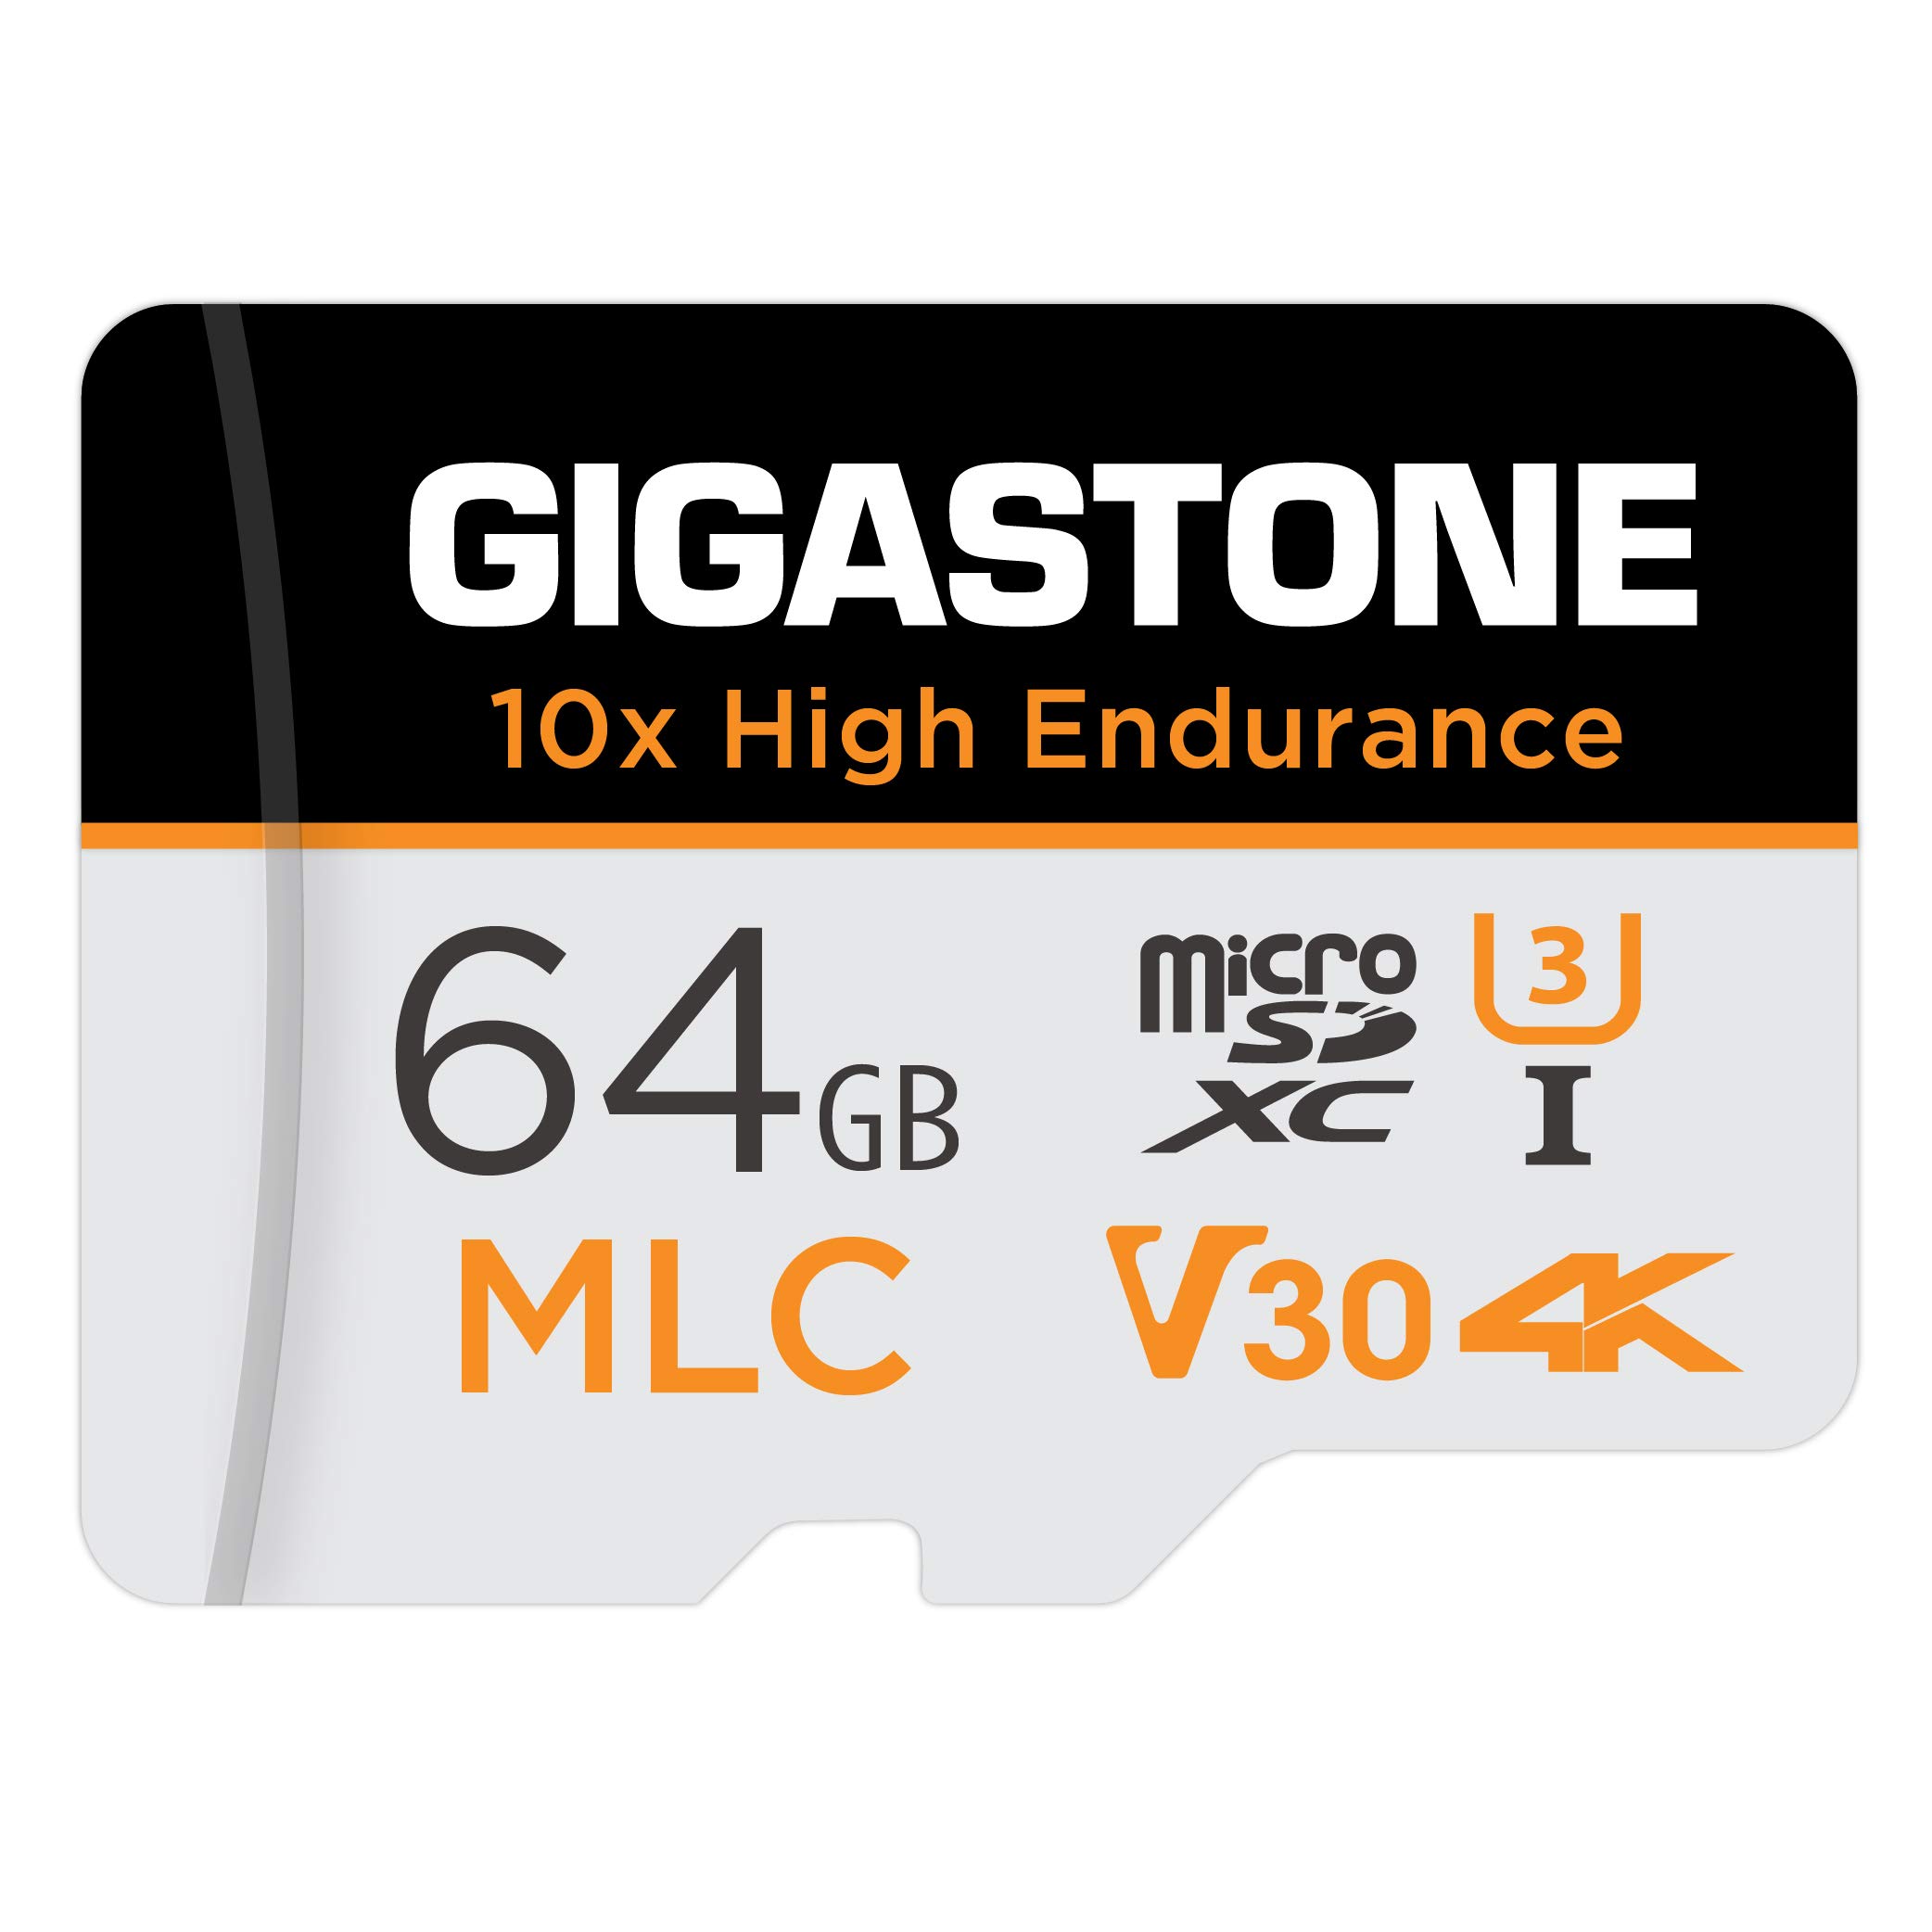 Gigastone MLC 10x High Endurance 64GB MicroSDXC Speicherkarte und SD Adapter, bis zu 100/65 MB/s ideal für 4K Videoaufnahme, Kompatibel mit Dashcam Überwachungskamera, Micro SD UHS-I U3 V30 Klasse 10